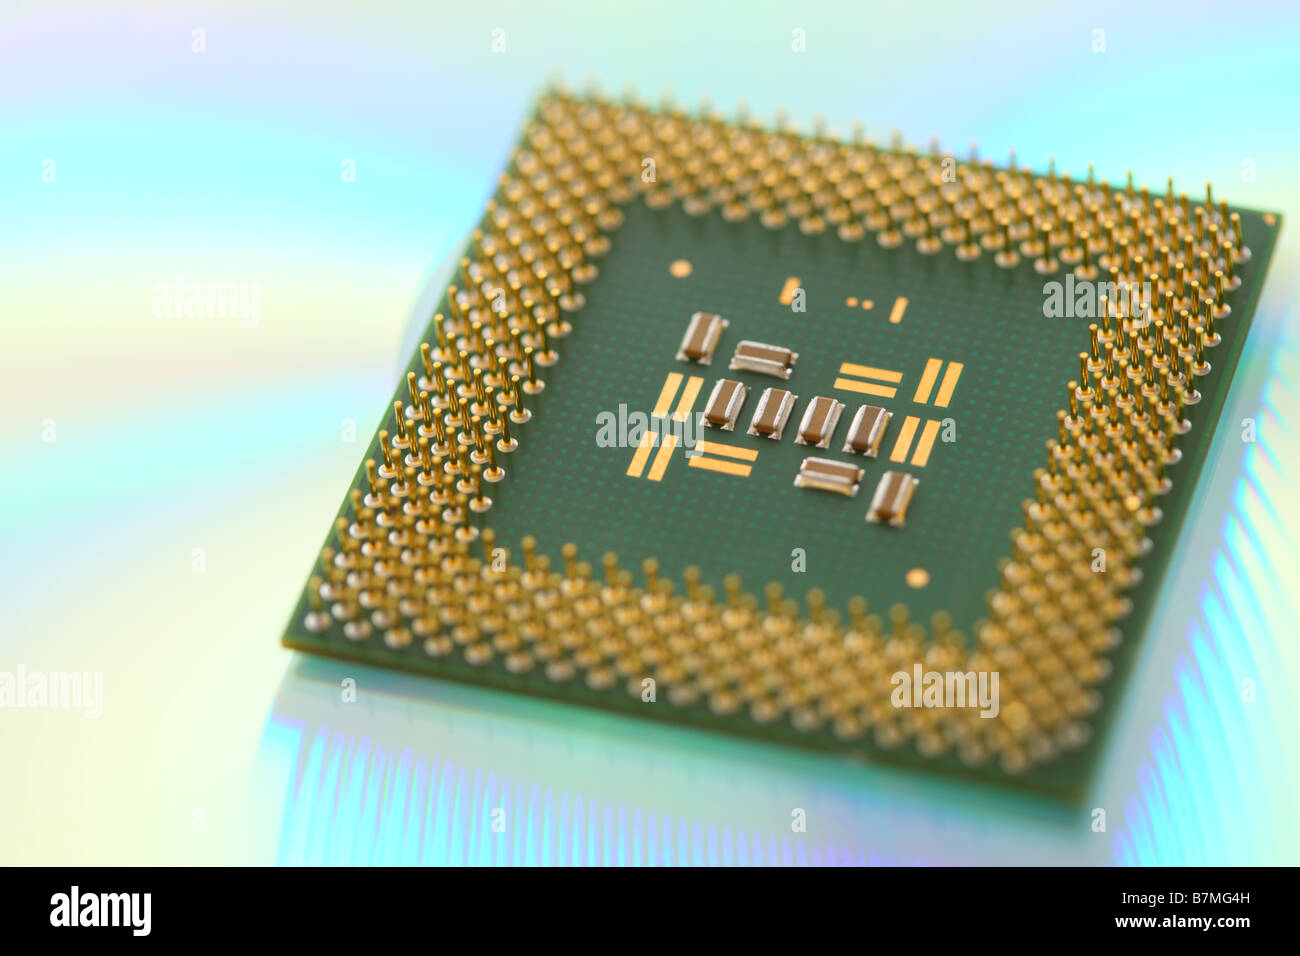 Computer CPU-Prozessor-Chip auf grün reflektierenden Hintergrund Stockfoto